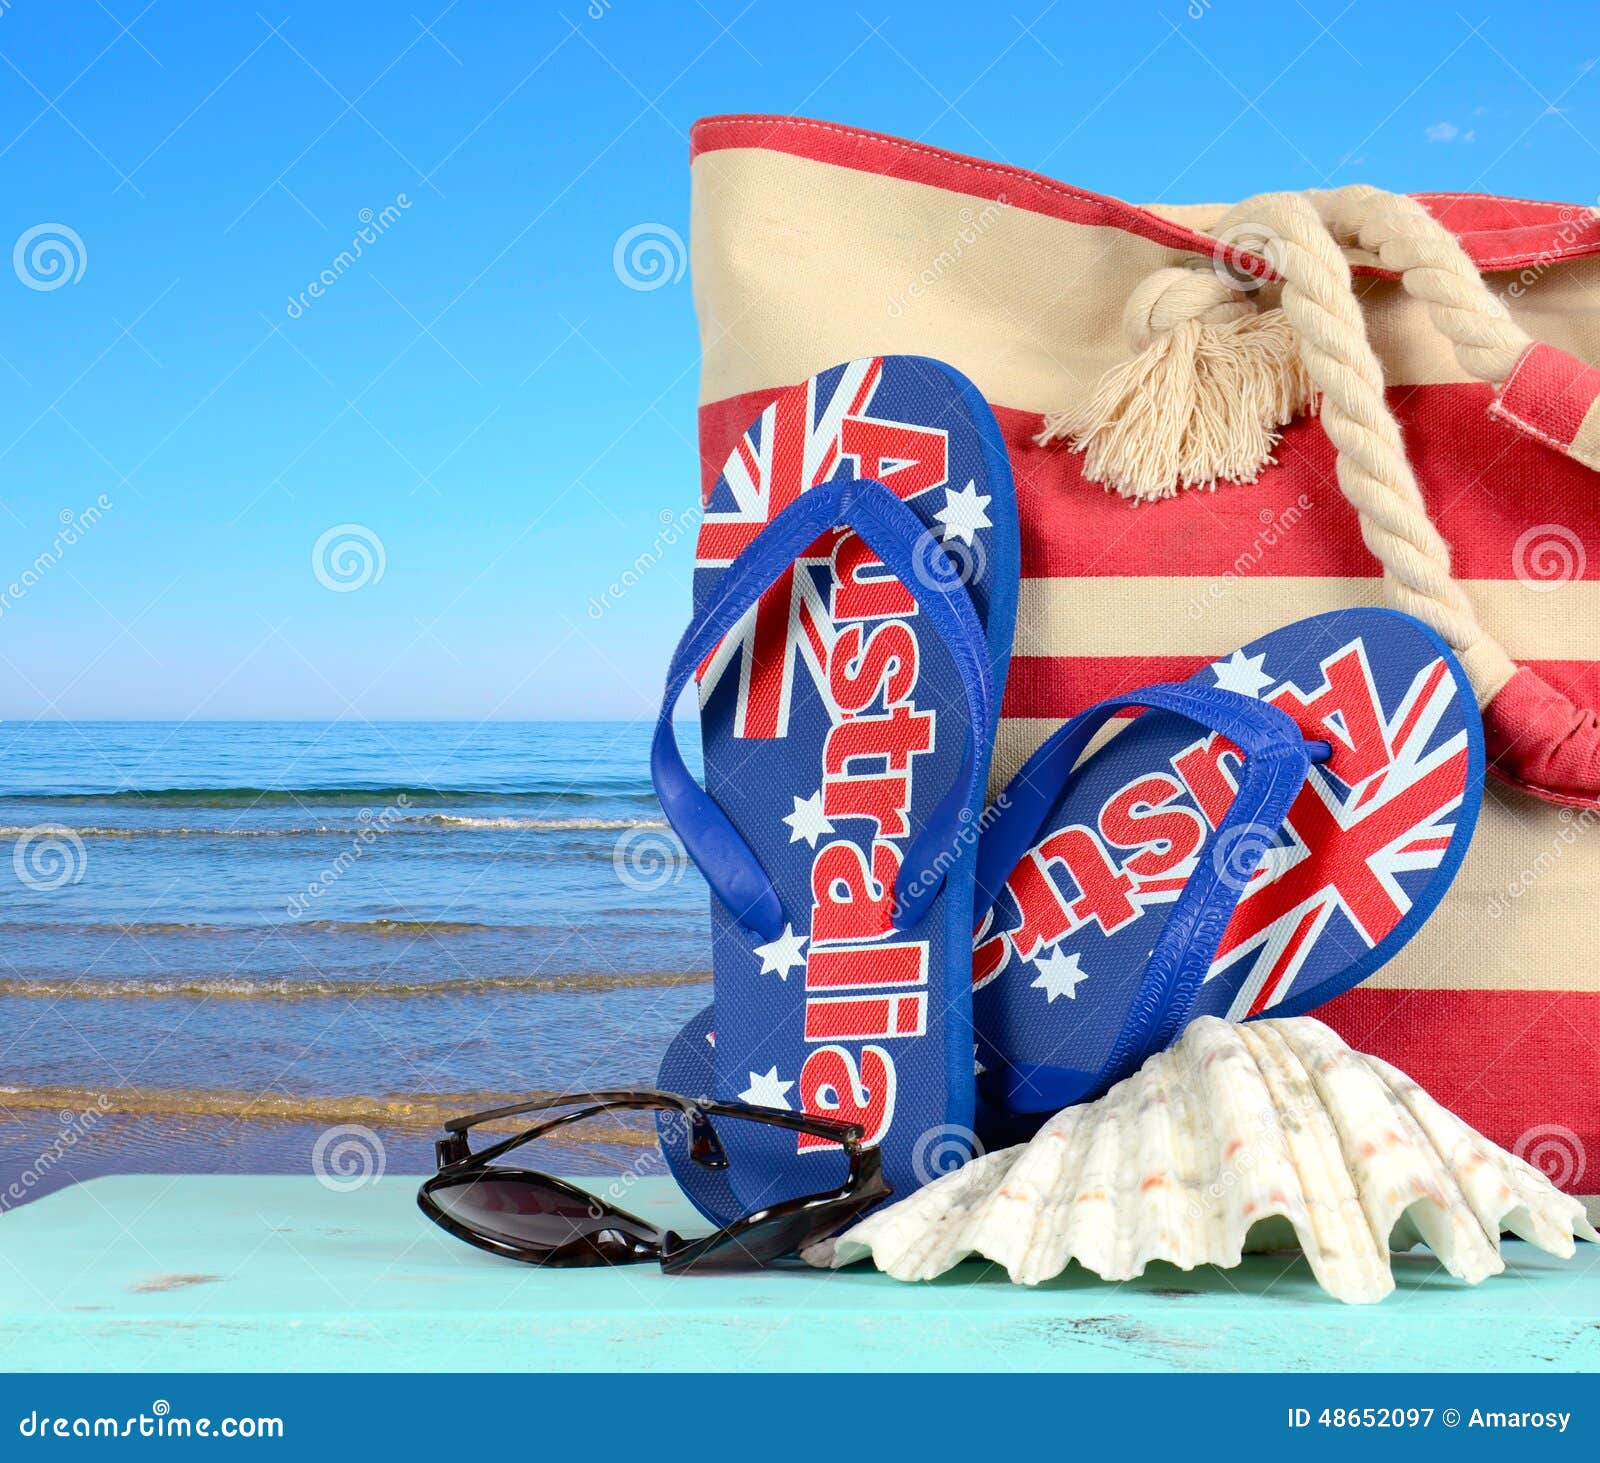 australian beach scene with aussie sandals